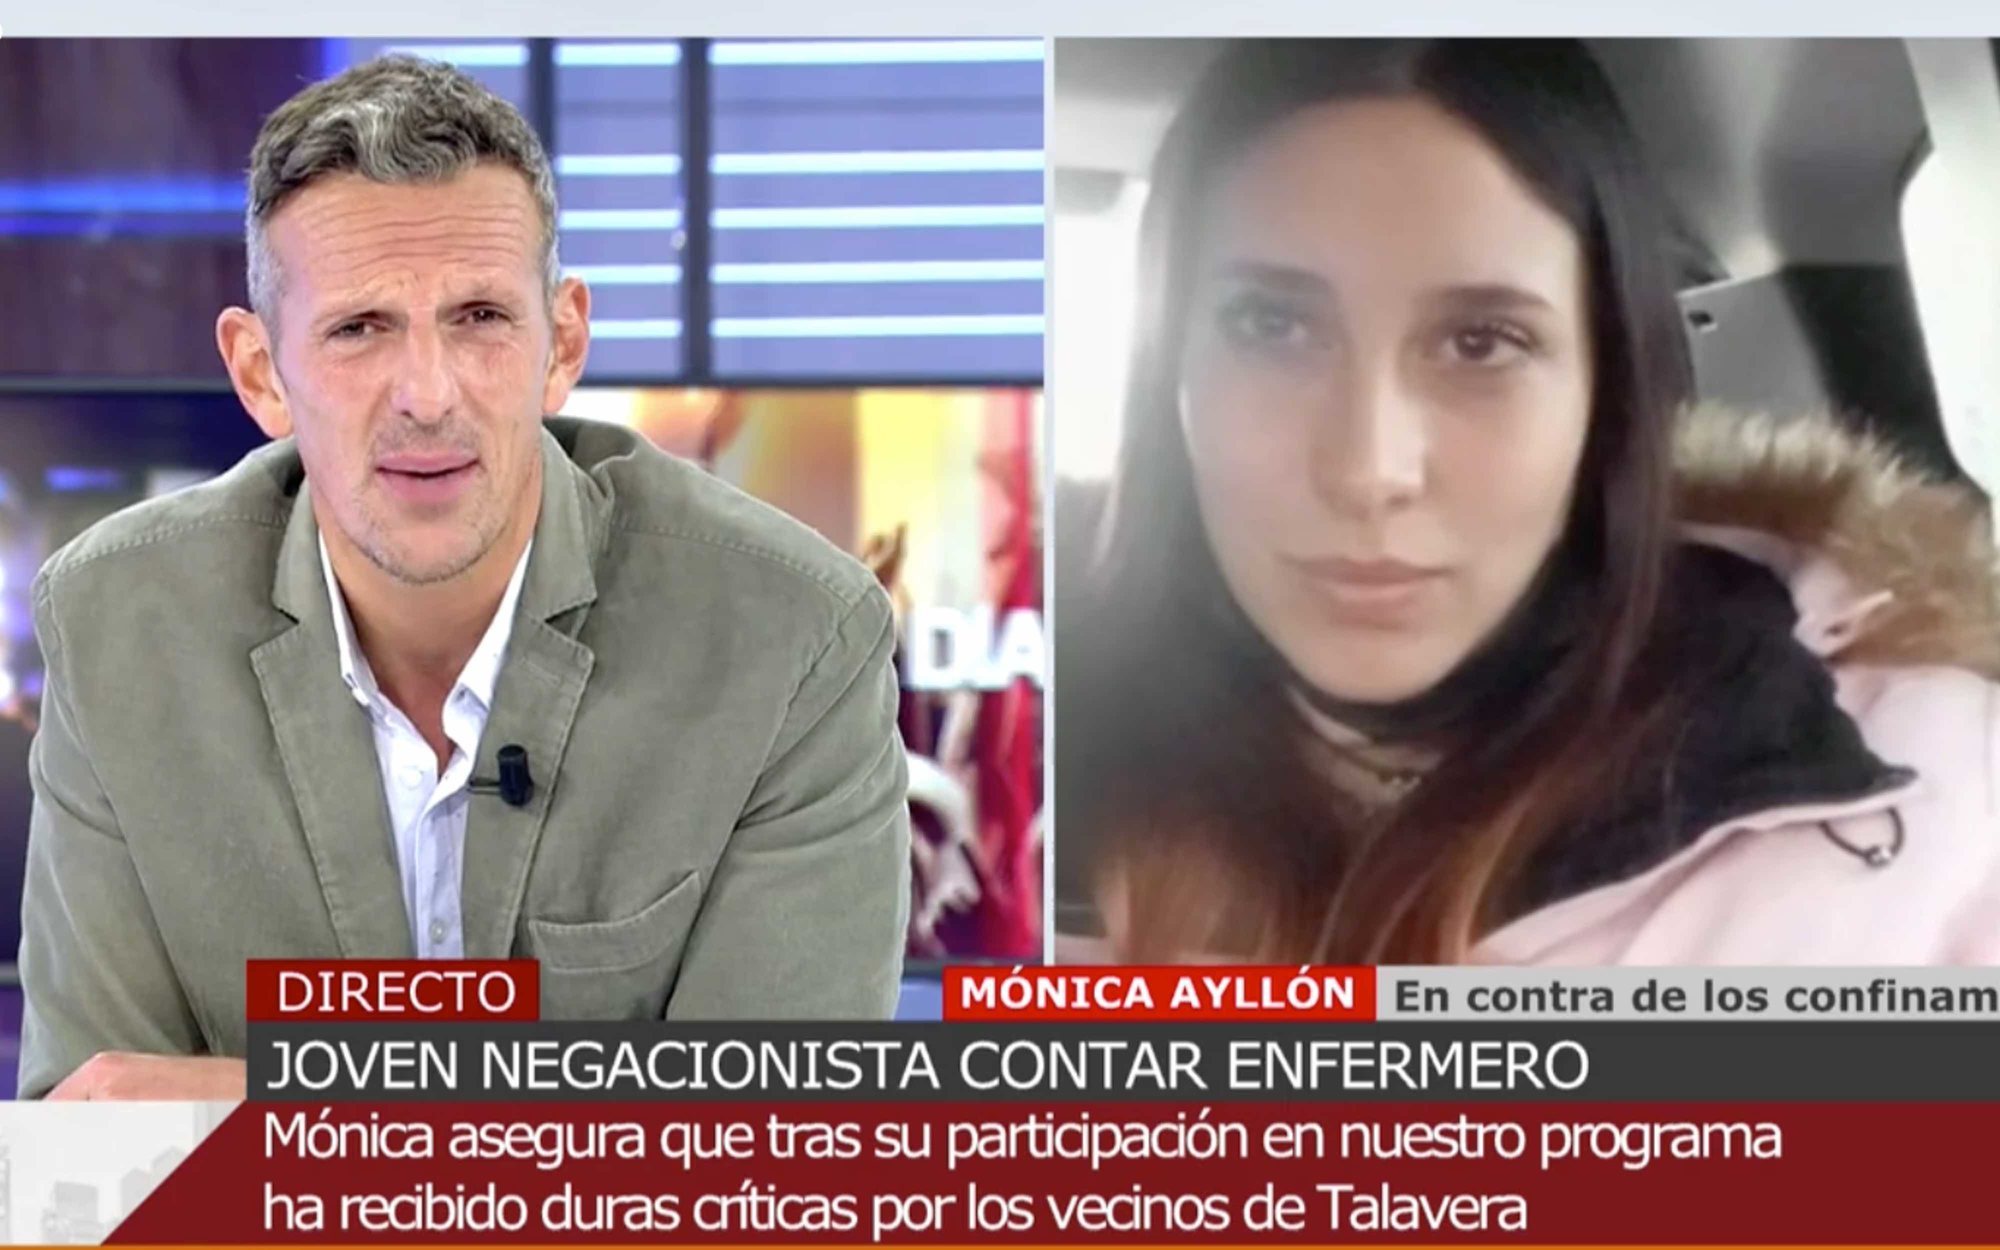 Mónica, la joven negacionista de 'Cuatro al día', reaparece: "Nos merecemos una fiesta"